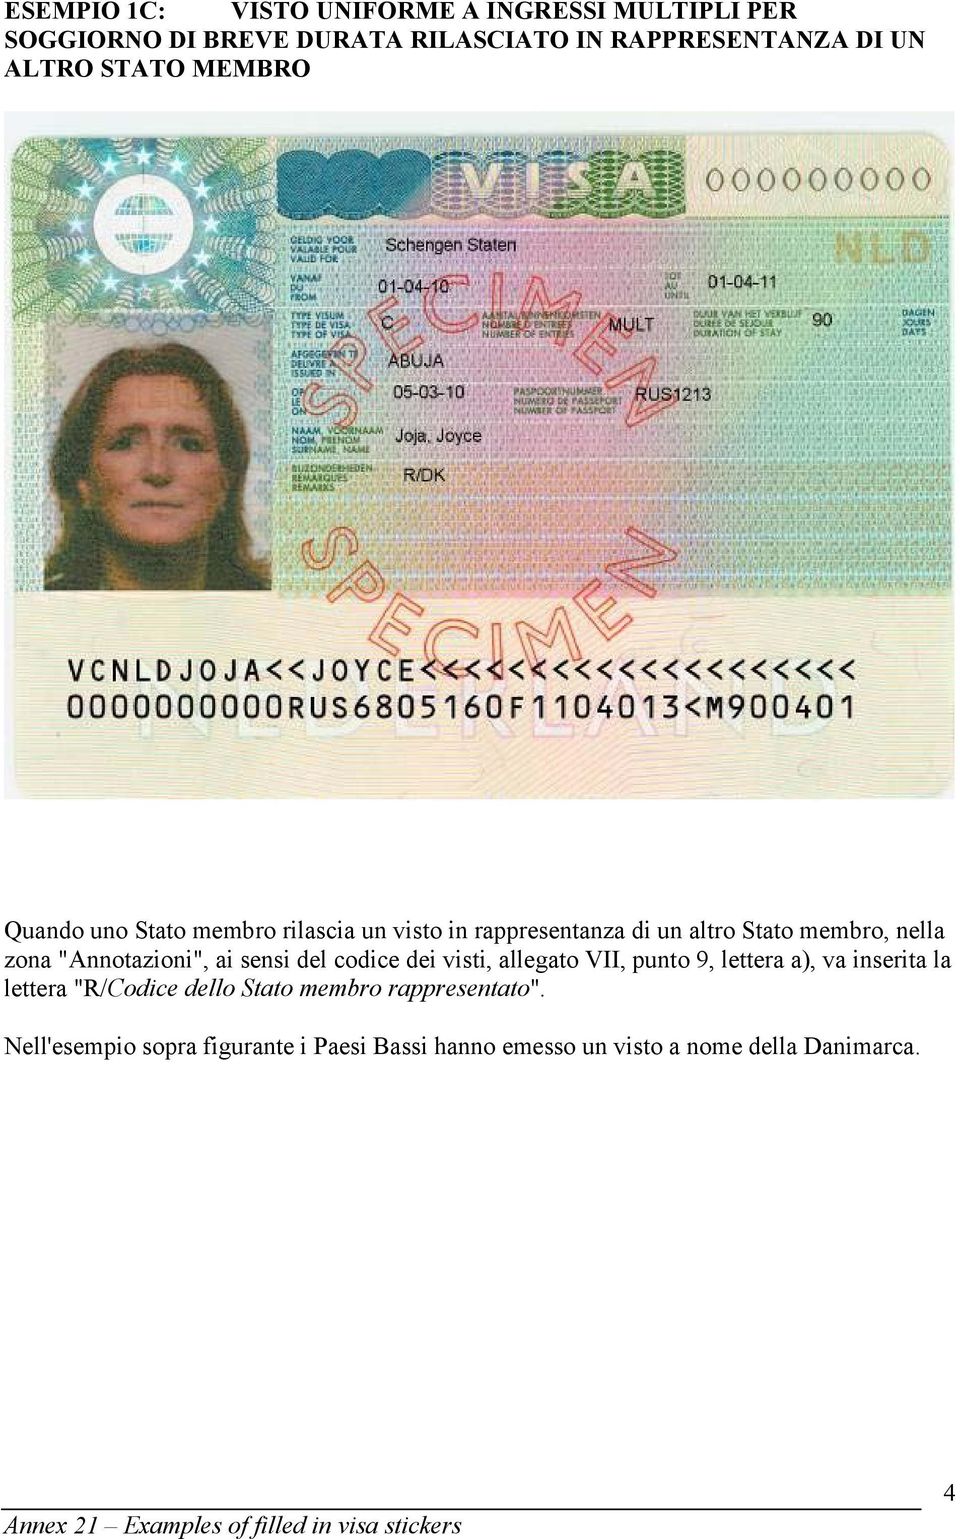 "Annotazioni", ai sensi del codice dei visti, allegato VII, punto 9, lettera a), va inserita la lettera "R/Codice